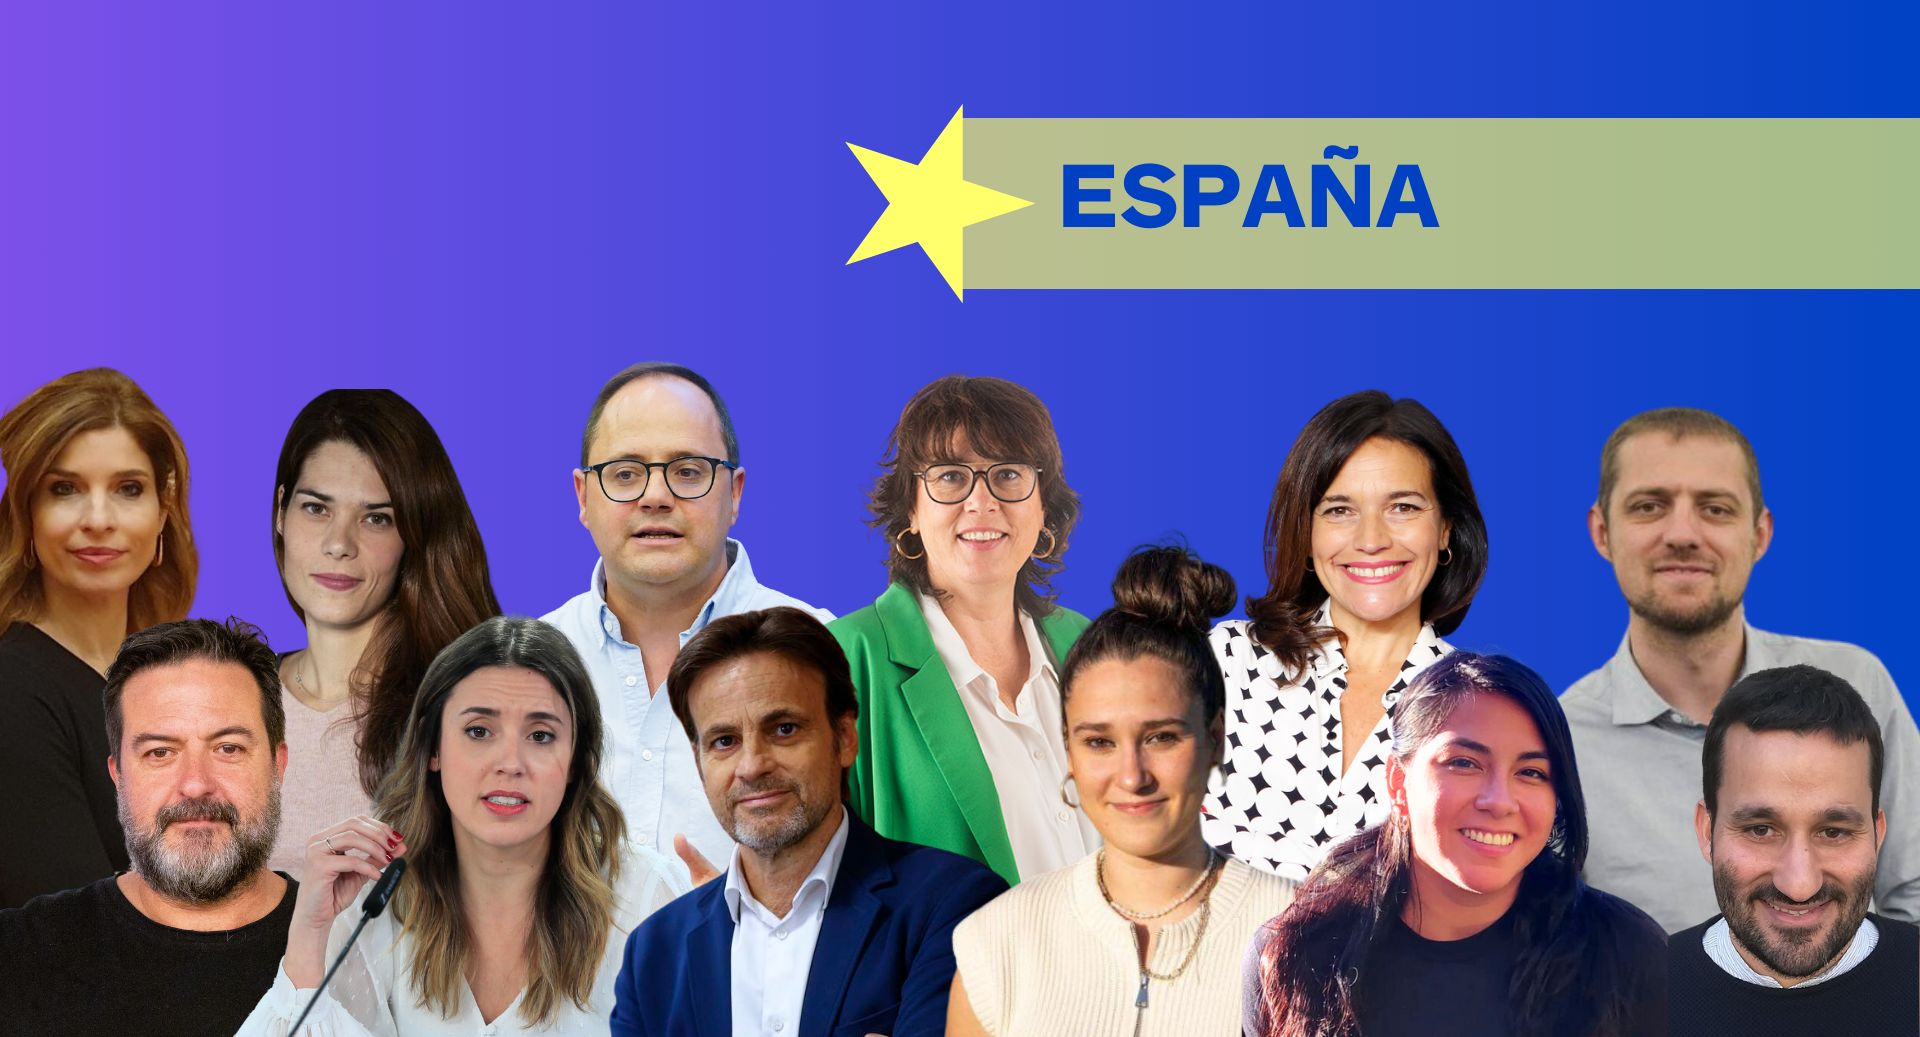 Hier sieht man die Kandiderenden aus Spanien der EU Future 100